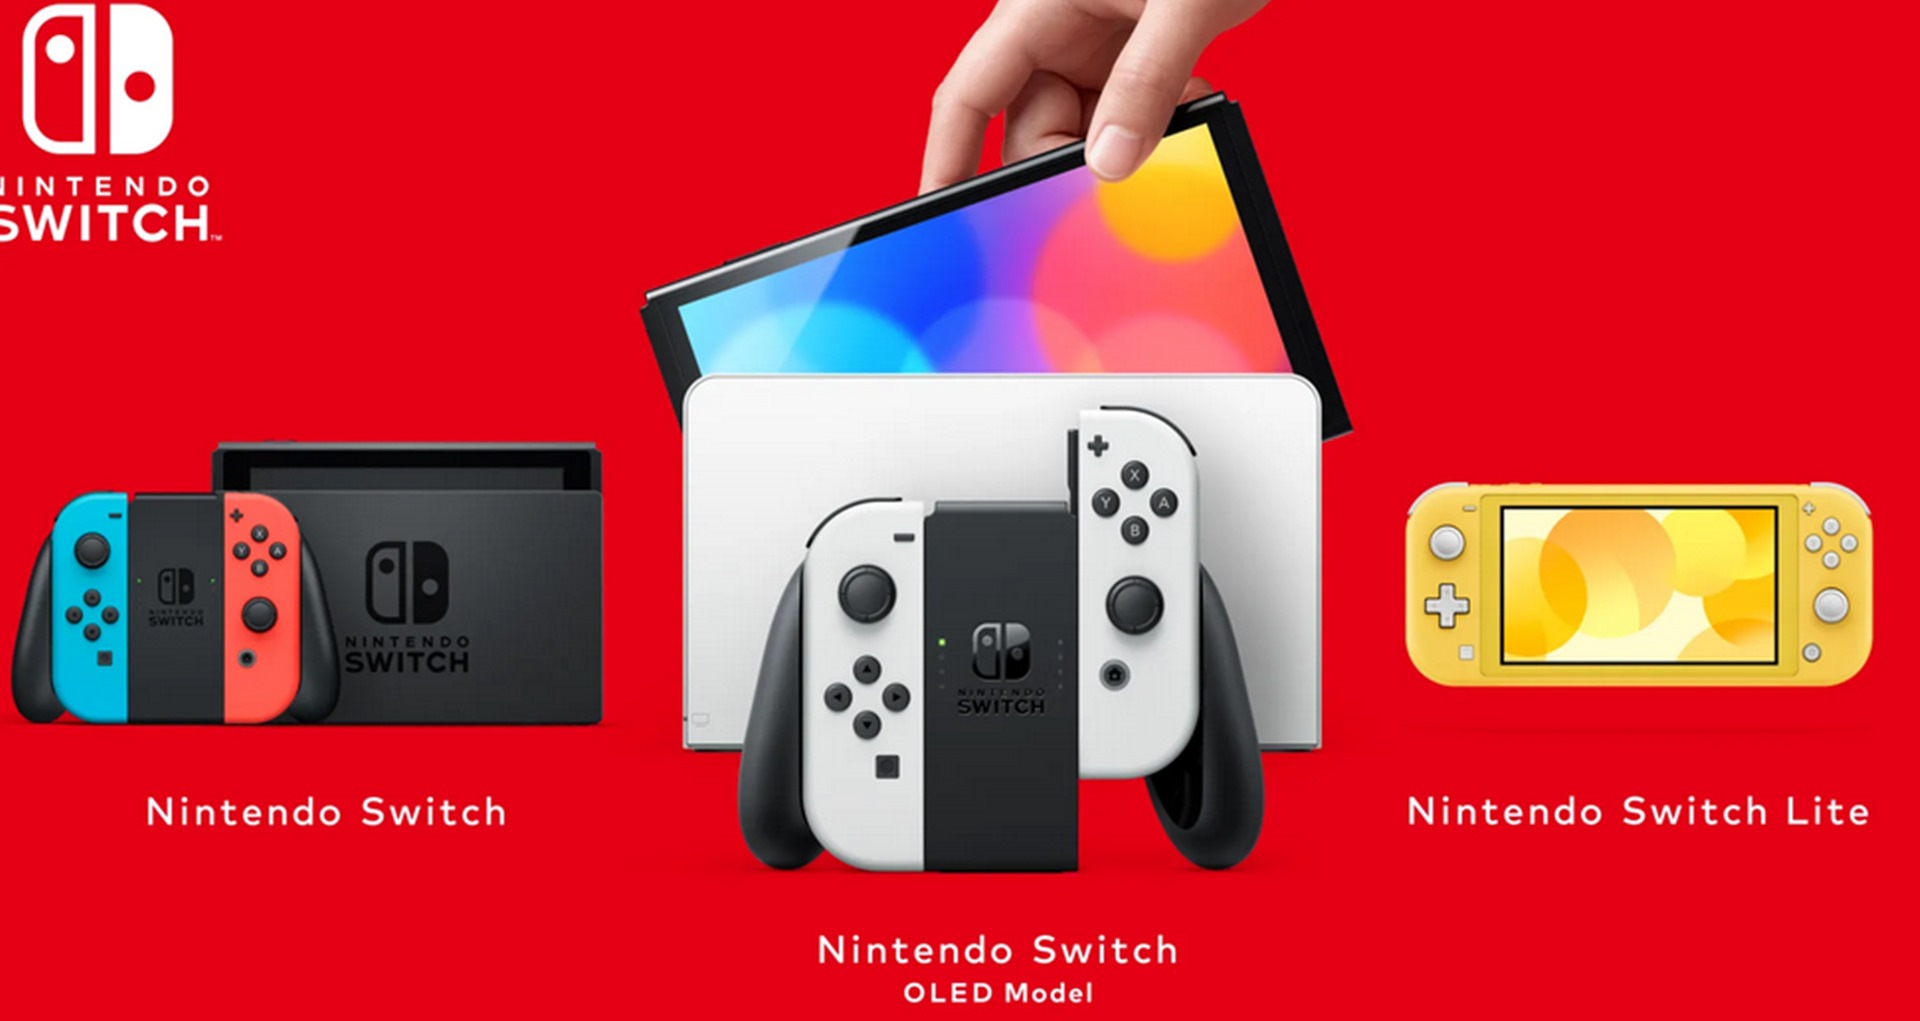 ประธาน นินเทนโด ย้ำ Nintendo Switch ยังอยู่ในช่วงกลางยุคเท่านั้น